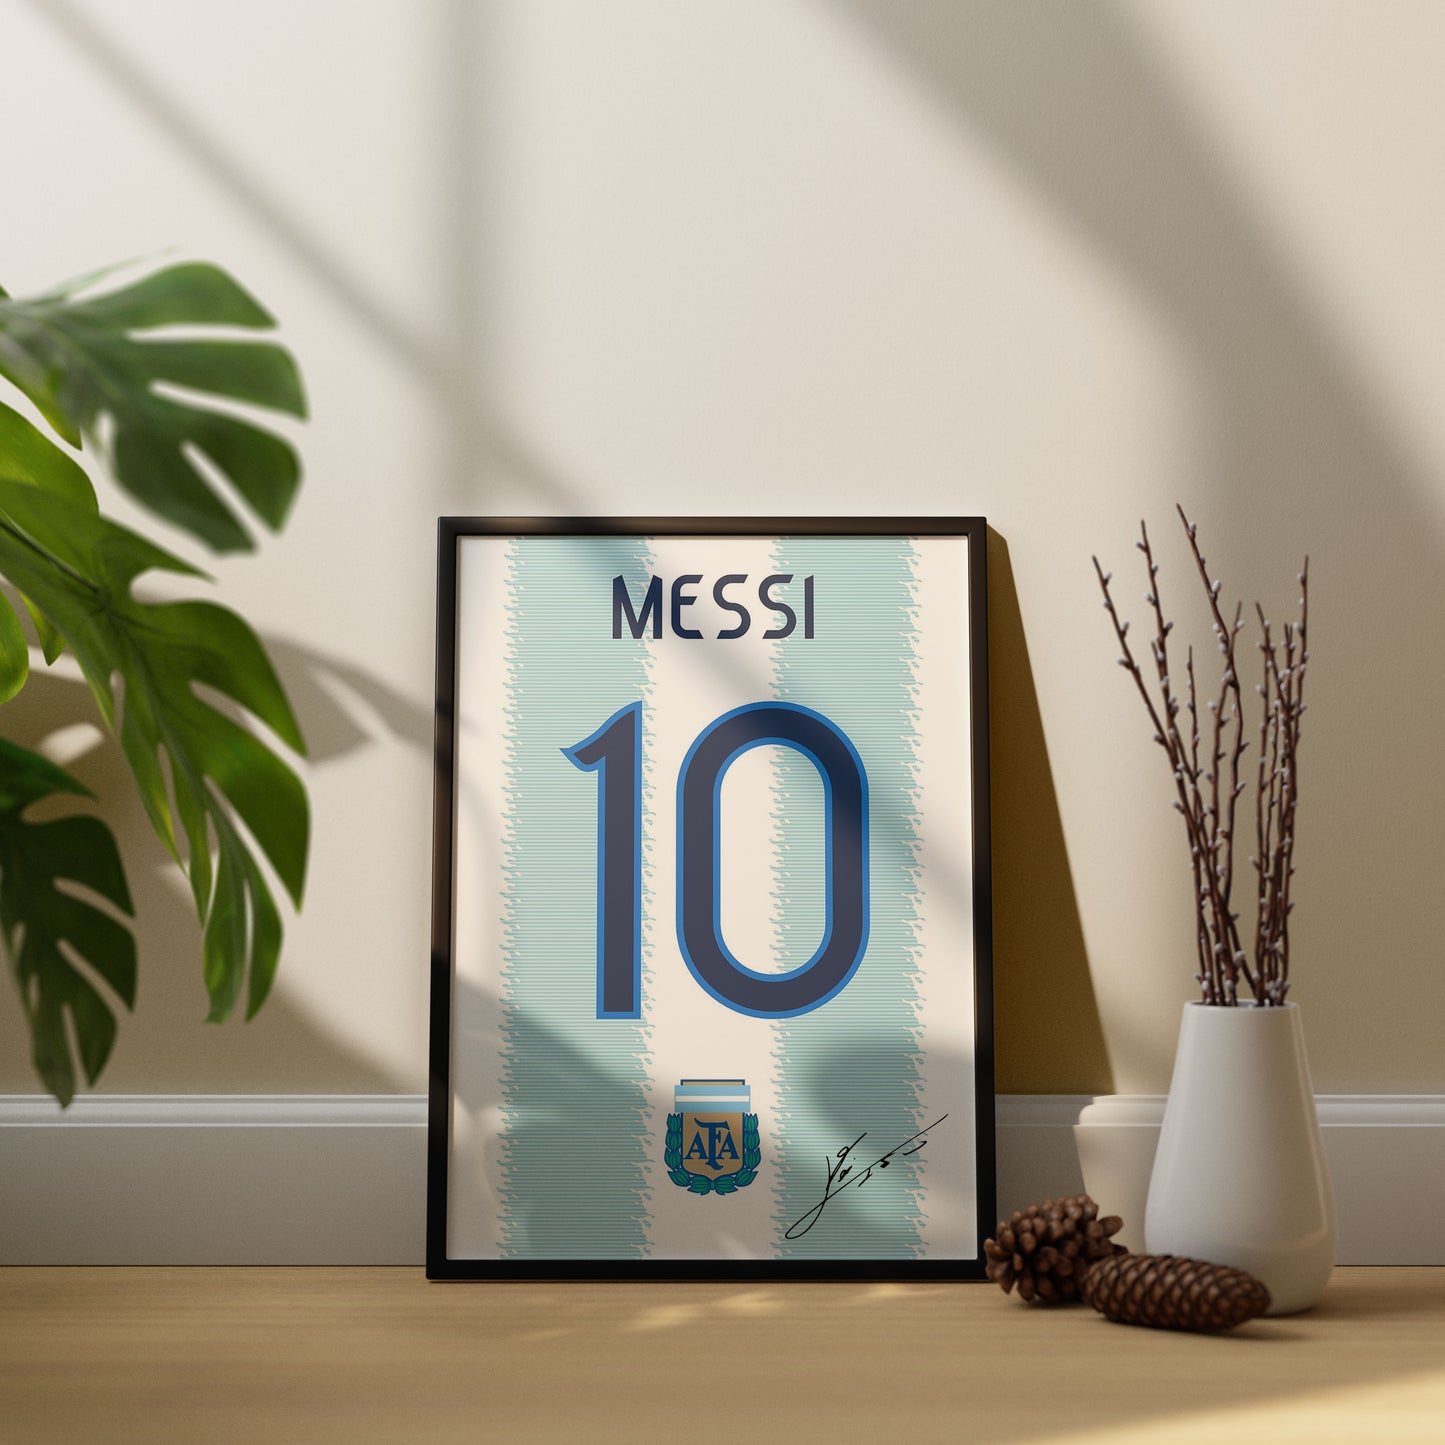 Lionel Messi Argentina Combo